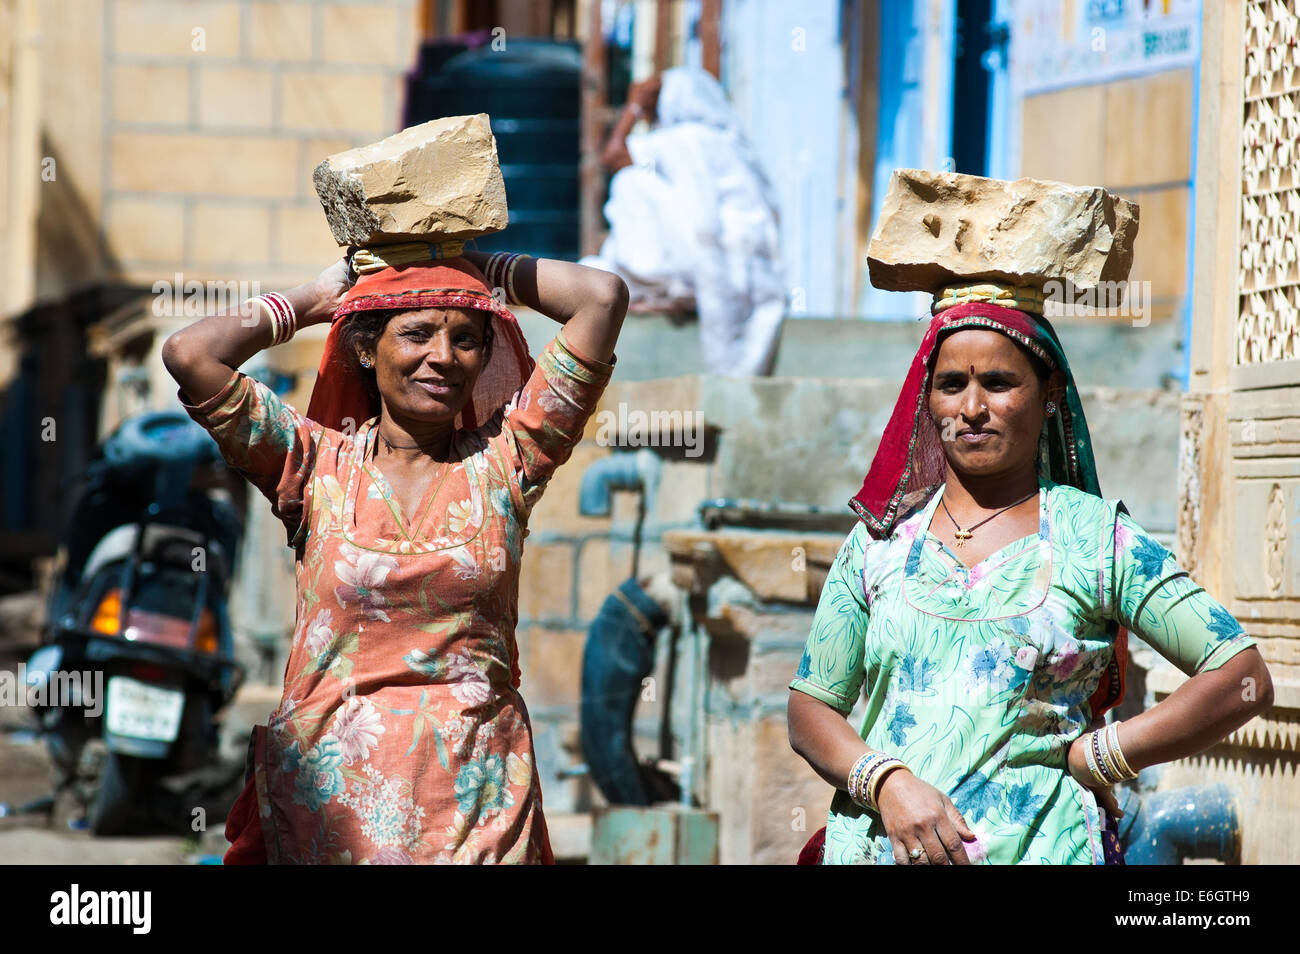 JAISALMER, INDIA - Dec 26 : femmes portent sur leur tête une brique sur un chantier on Fév 26, 2013 dans Jaisalmer, Inde. Banque D'Images